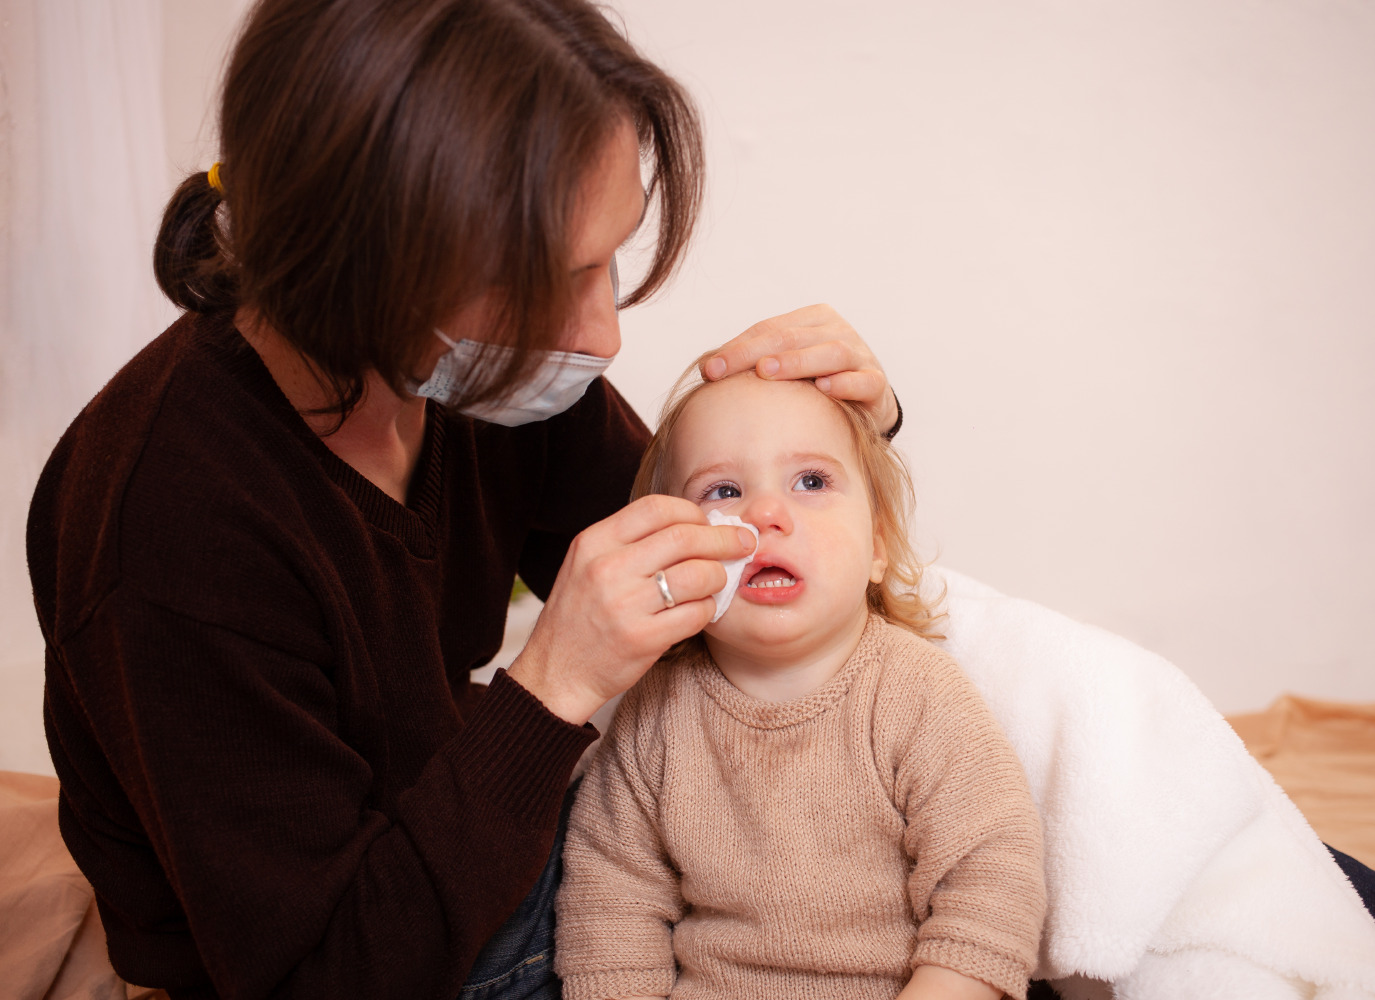 Hướng dẫn mẹ làm sao chăm sóc trẻ 6 tháng bị sốt tại nhà